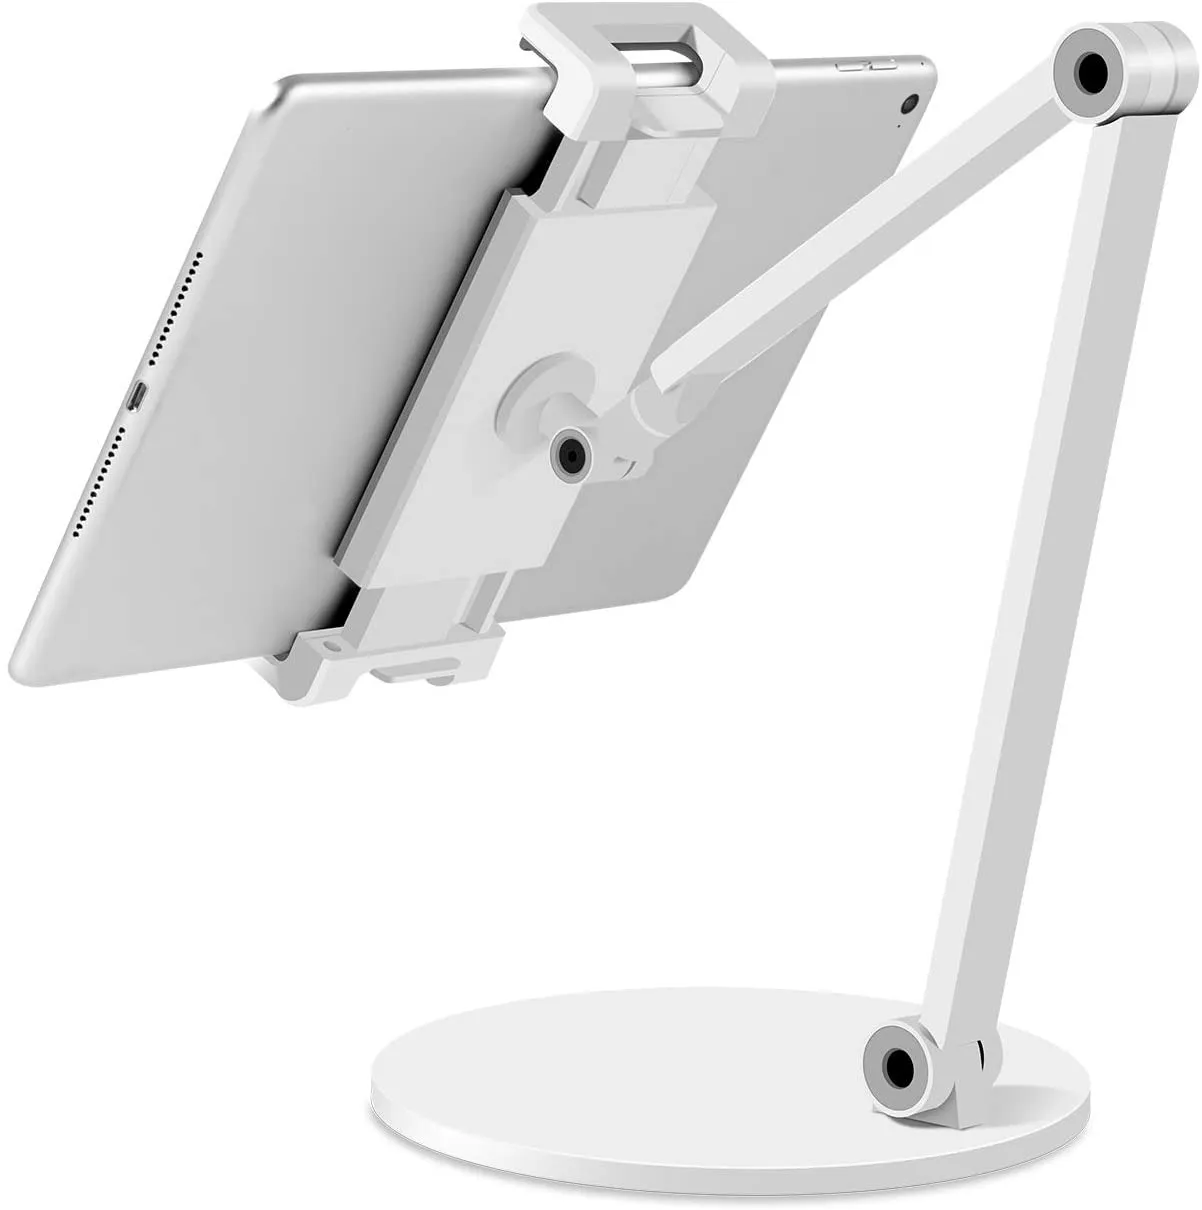 Stand Ipad Pro Stand, suporte de suporte de tablet multi-ângulo para 4.7 "-12.9" Série Microsoft Surface, iPhone, iPad, Samsung, Interruptor Nintendo, Kindle, eBook Reader